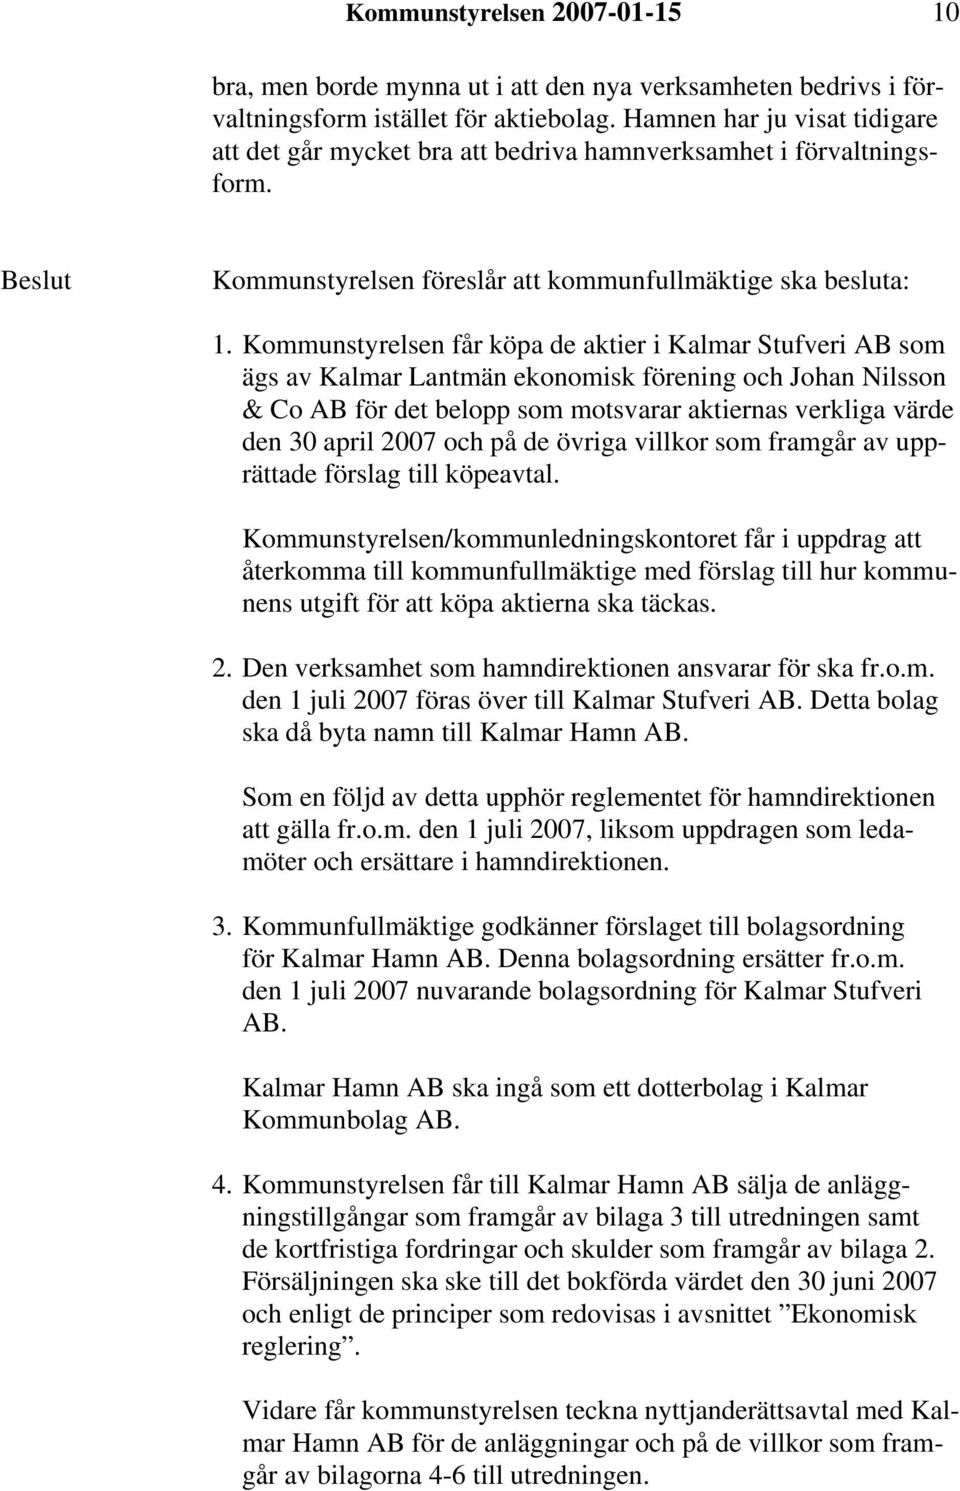 Kommunstyrelsen får köpa de aktier i Kalmar Stufveri AB som ägs av Kalmar Lantmän ekonomisk förening och Johan Nilsson & Co AB för det belopp som motsvarar aktiernas verkliga värde den 30 april 2007